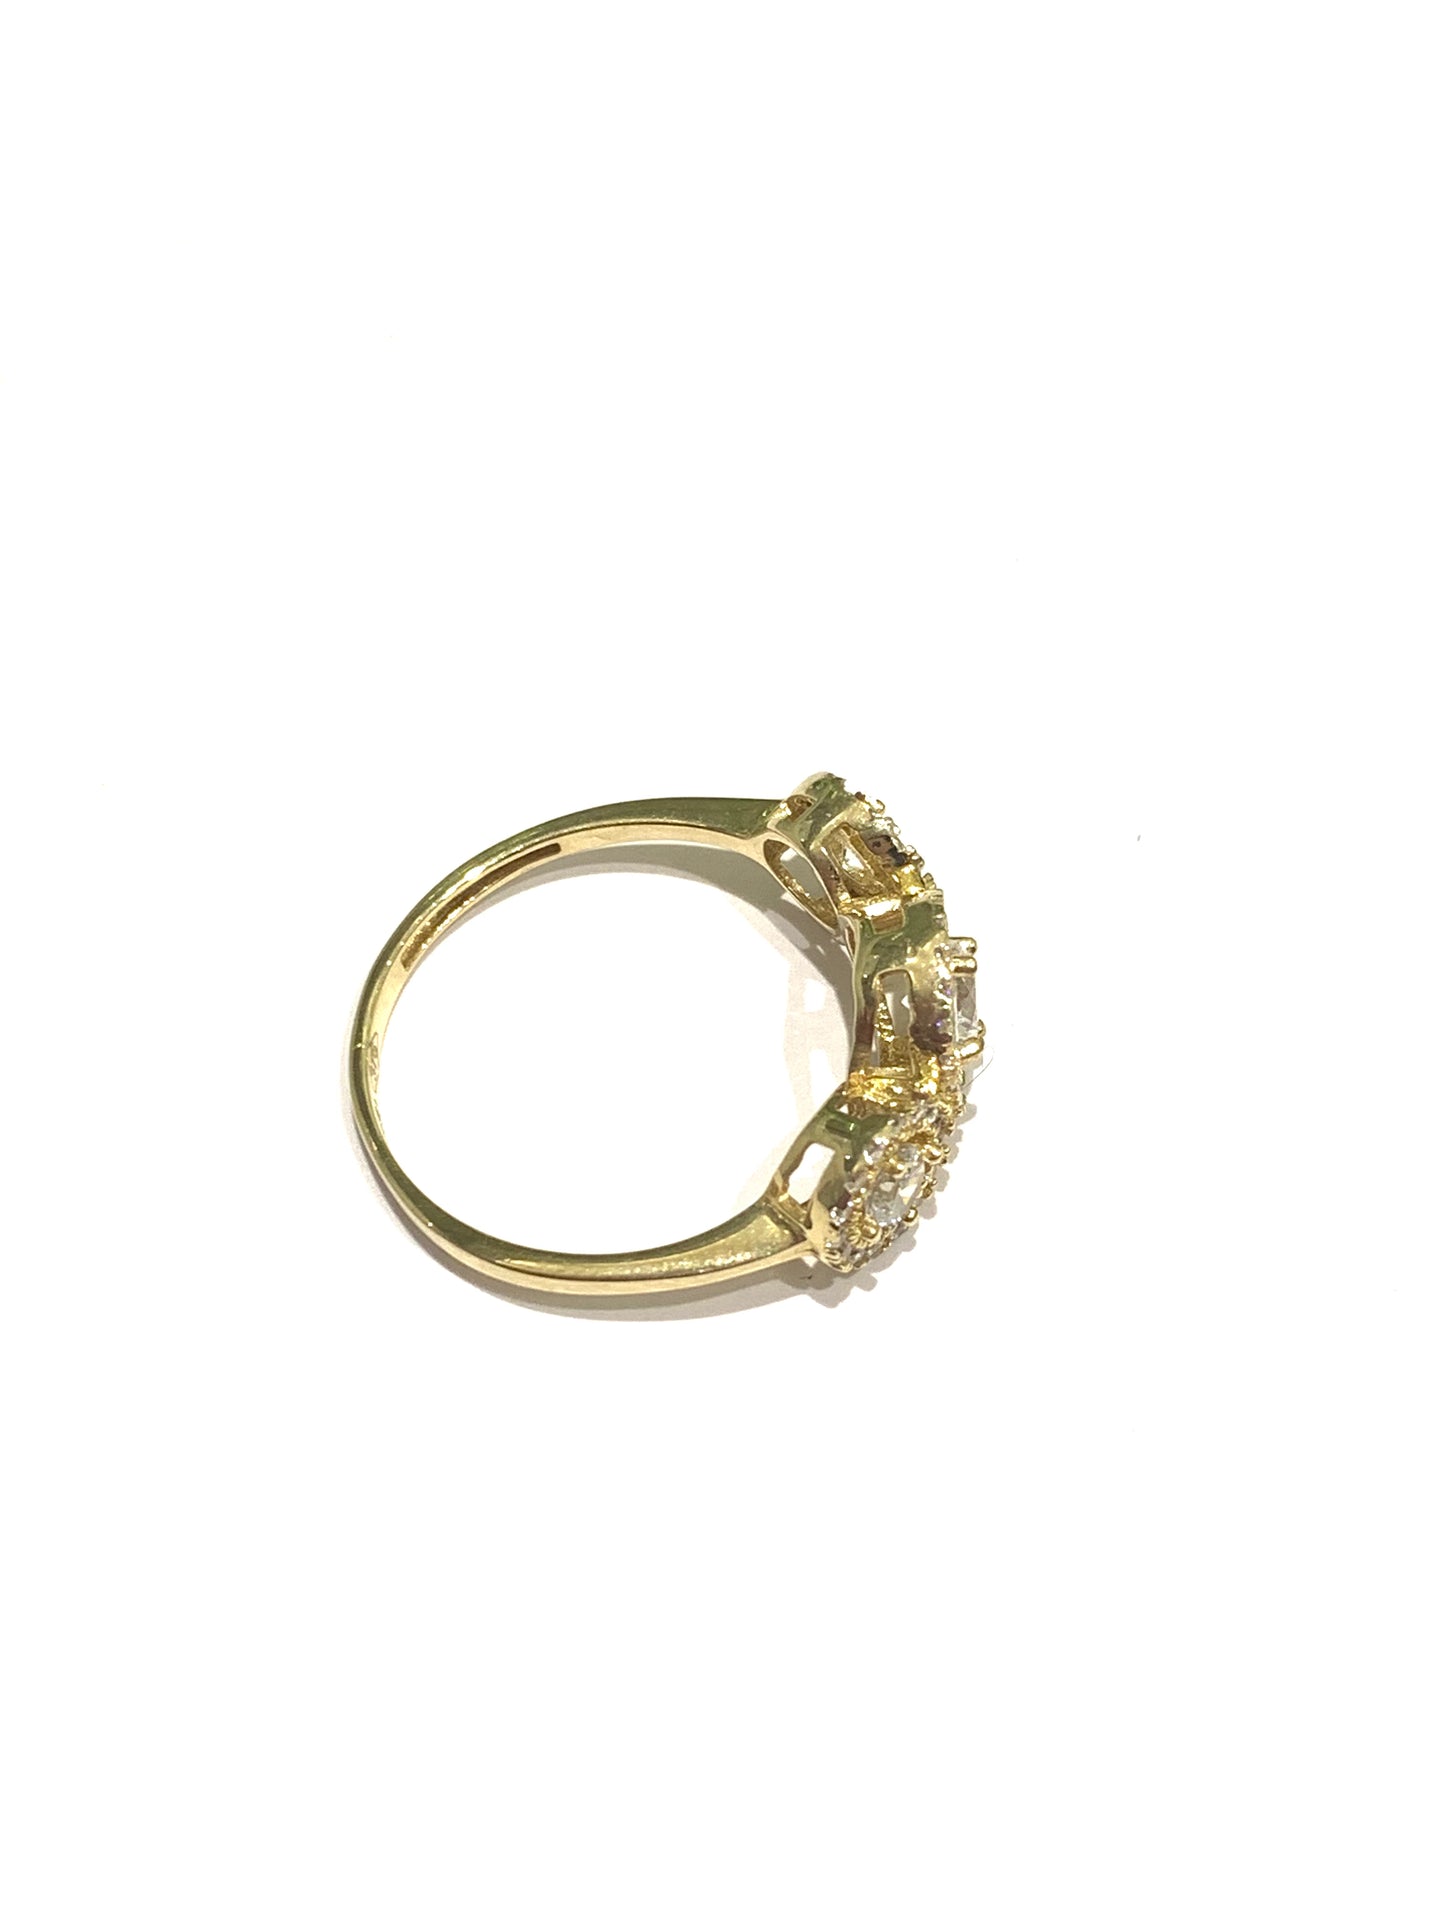 Anello trilogi in oro 9kt con zirconi centrali circondati da piccoli zirconi.  Disponibile in oro giallo e in oro bianco.  Larghezza zircone centrale 0,7 cm.